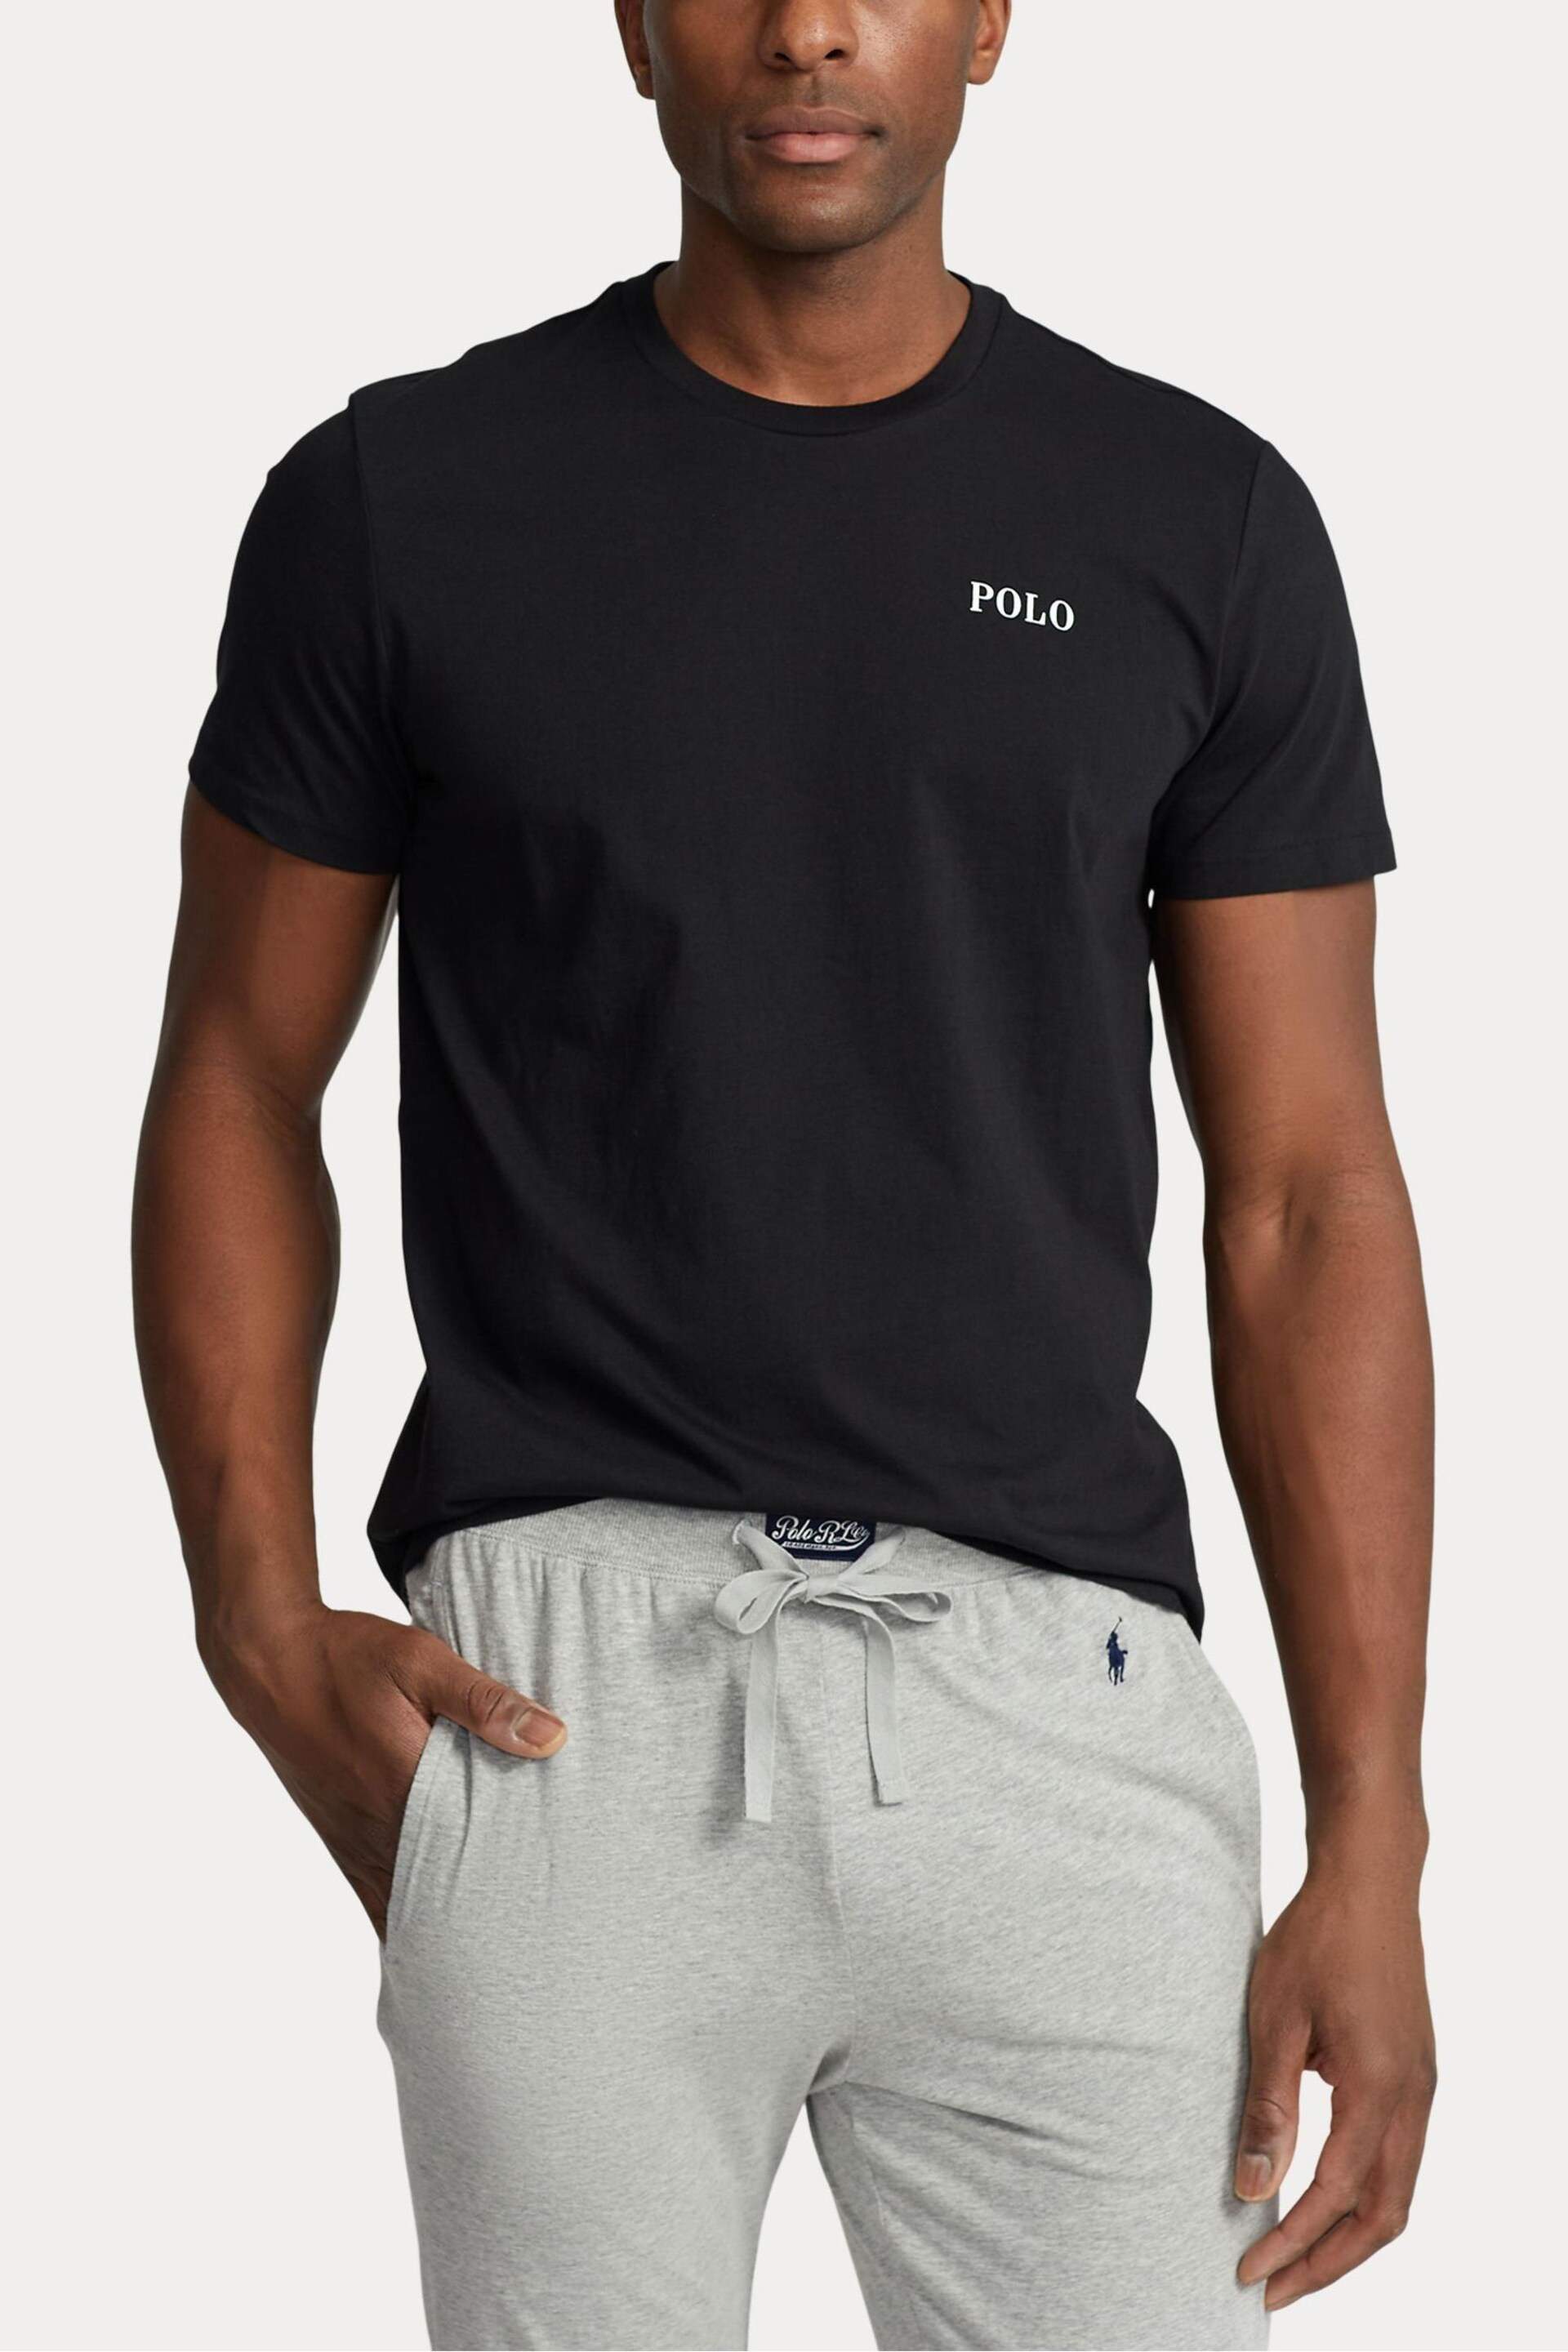 Polo Ralph Lauren Cotton Jersey Short Sleeve Logo T-Shirt - Image 1 of 4